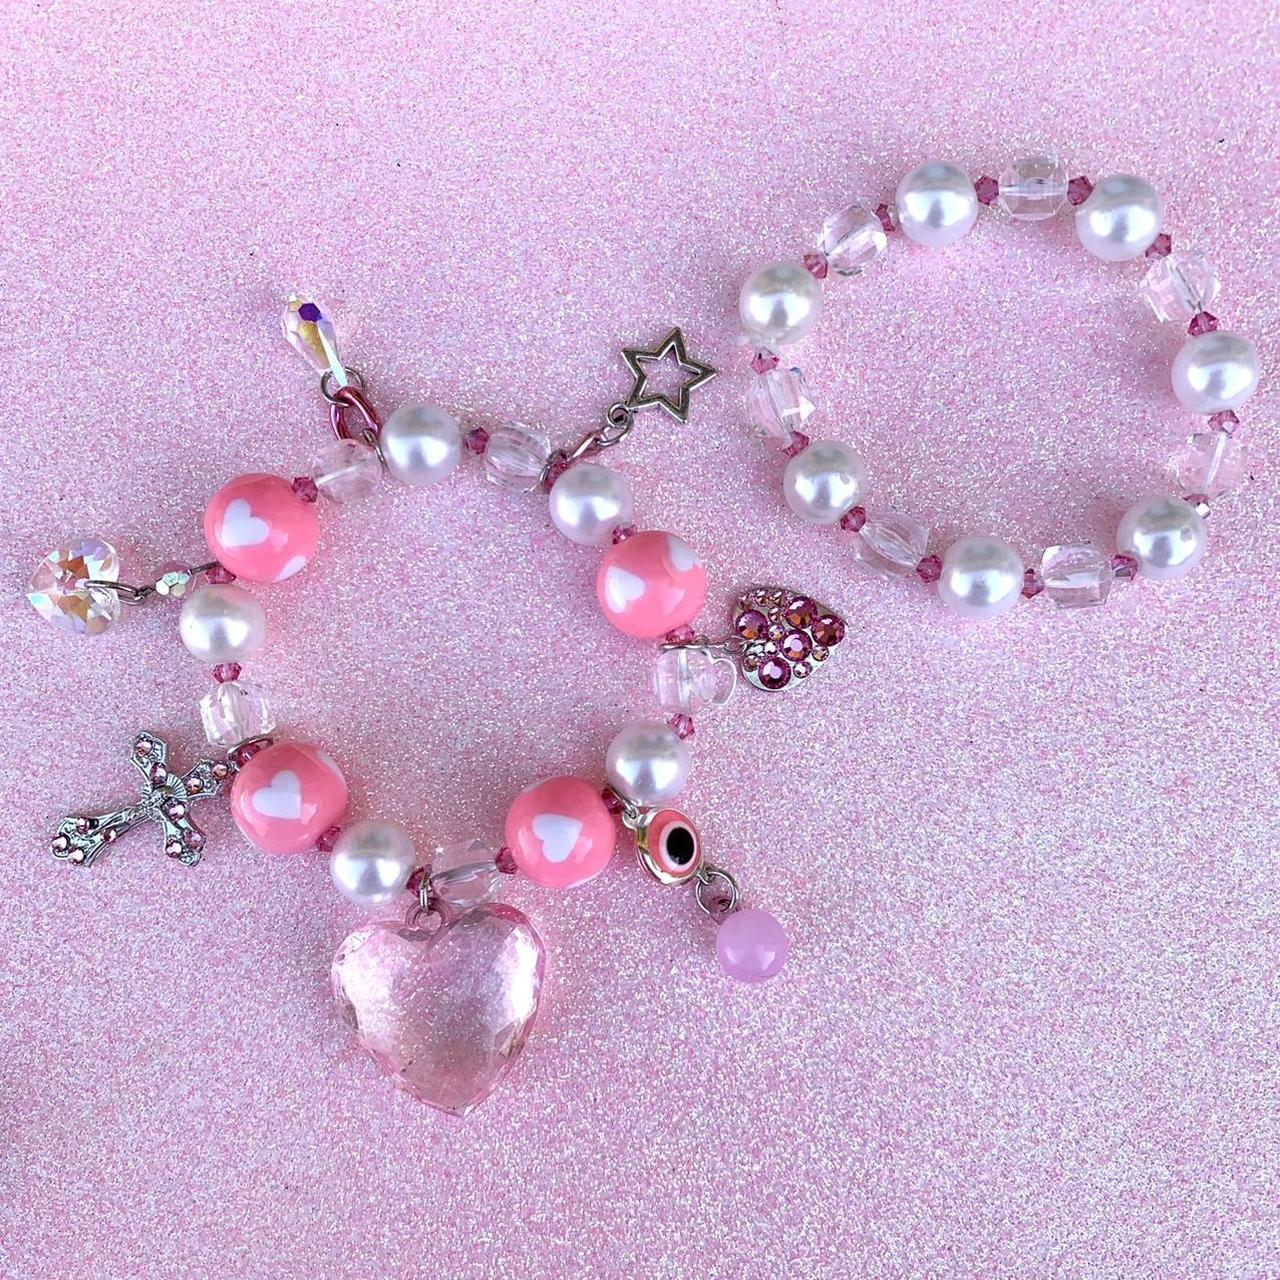 Sugarpill Women's White and Pink Jewellery